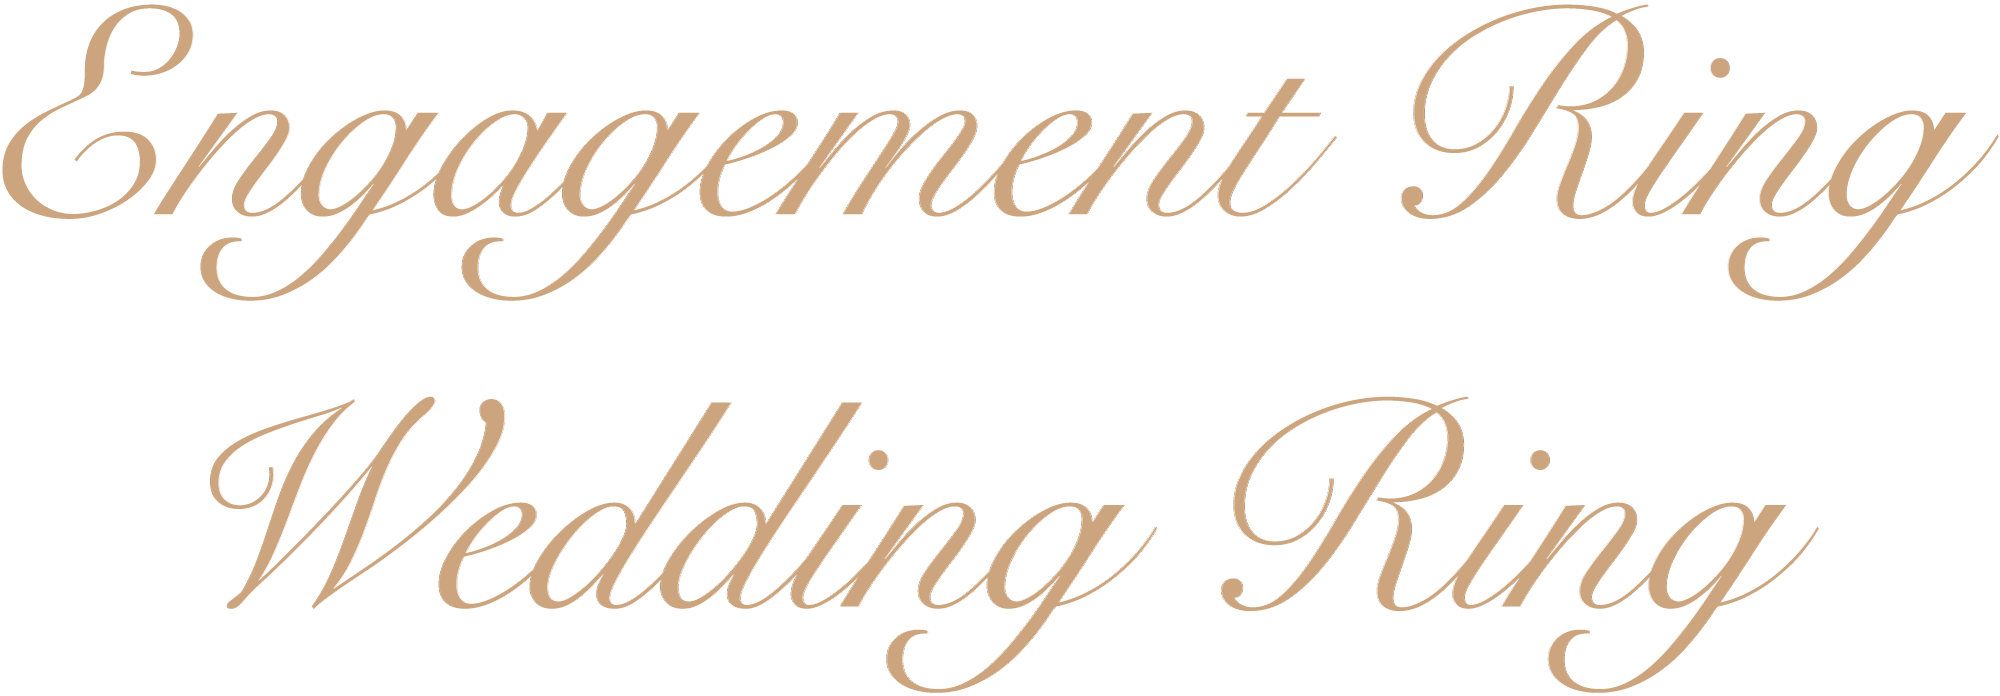 Engagement Ring/Wedding Ring